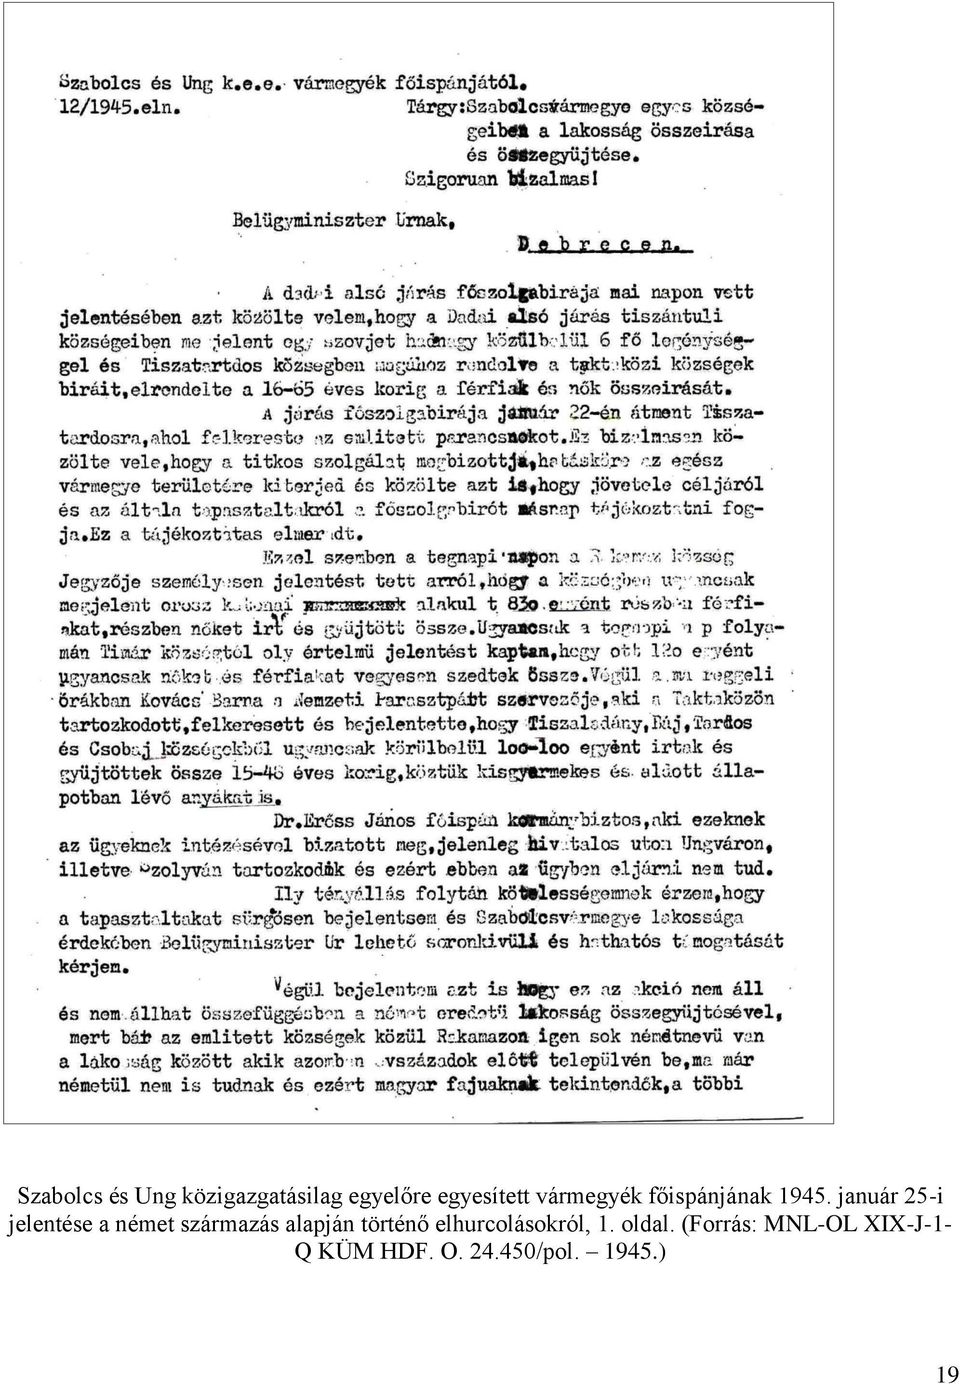 január 25-i jelentése a német származás alapján történő